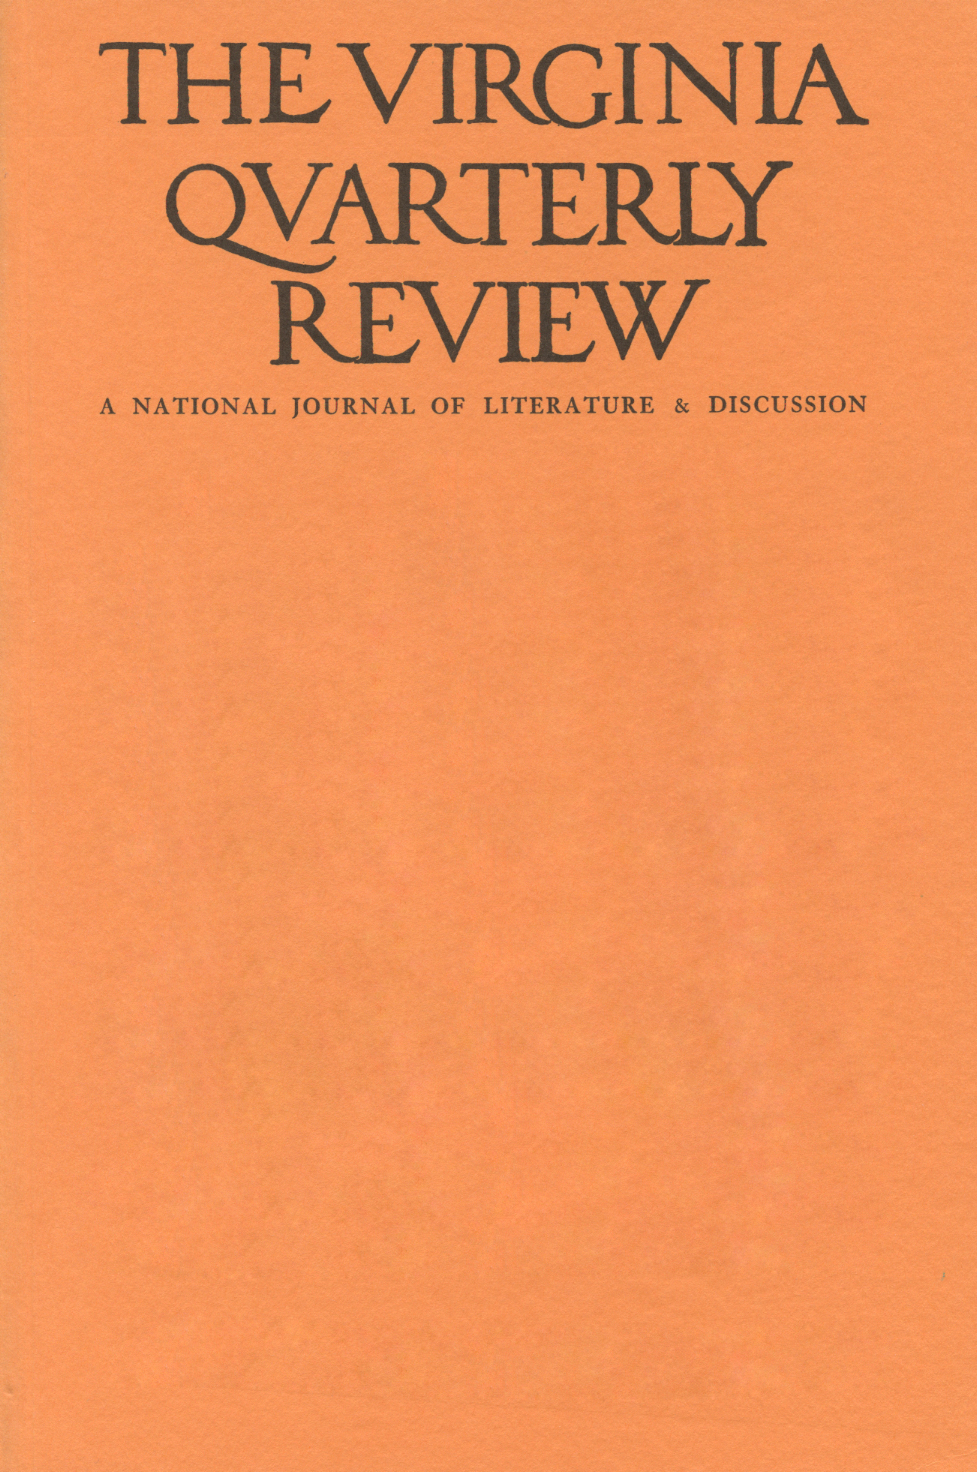 Virginia Quarterly Review, Spring 1946 cover